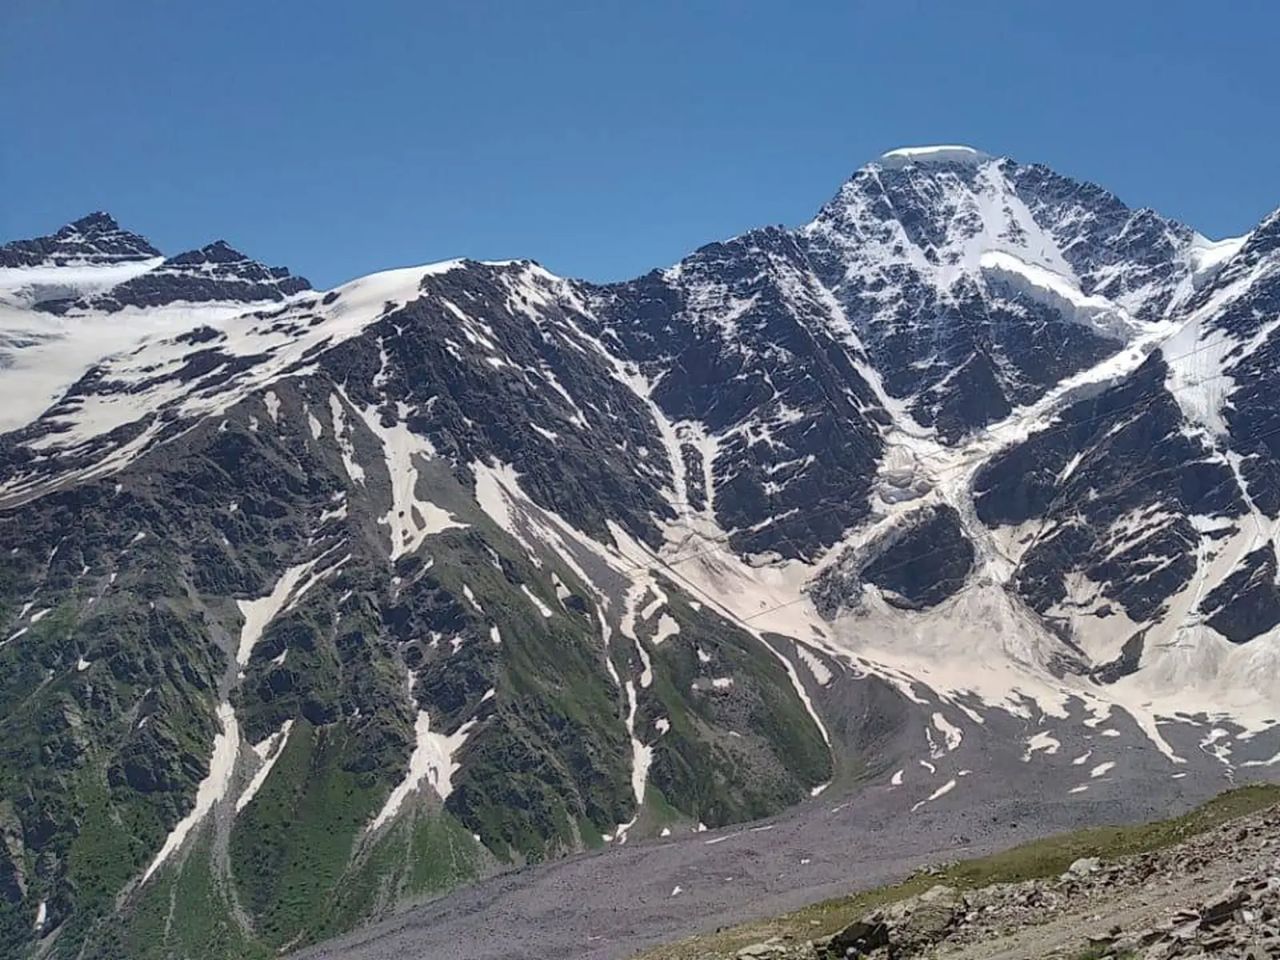 Эльбрус: к вершинам седой горы и приключениям! | Цена 2500₽, отзывы, описание экскурсии